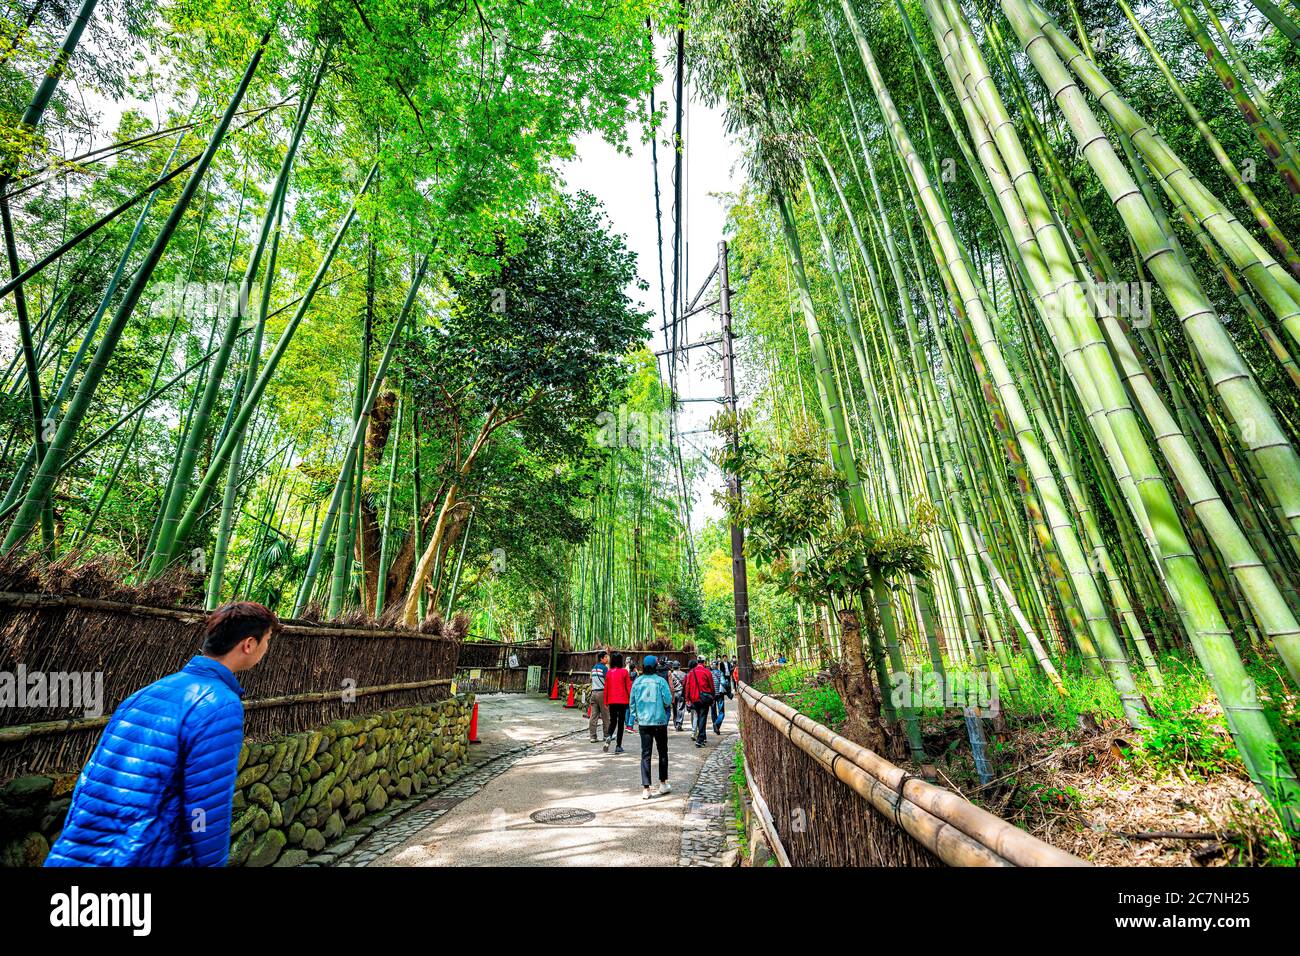 Kyoto, Japan - 12. April 2019: Berühmter Sagano Arashiyama Bambus Wald Hain Park mit Menschen Touristen Weitwinkel Blick auf den Frühling Tag mit grünem Laub Stockfoto